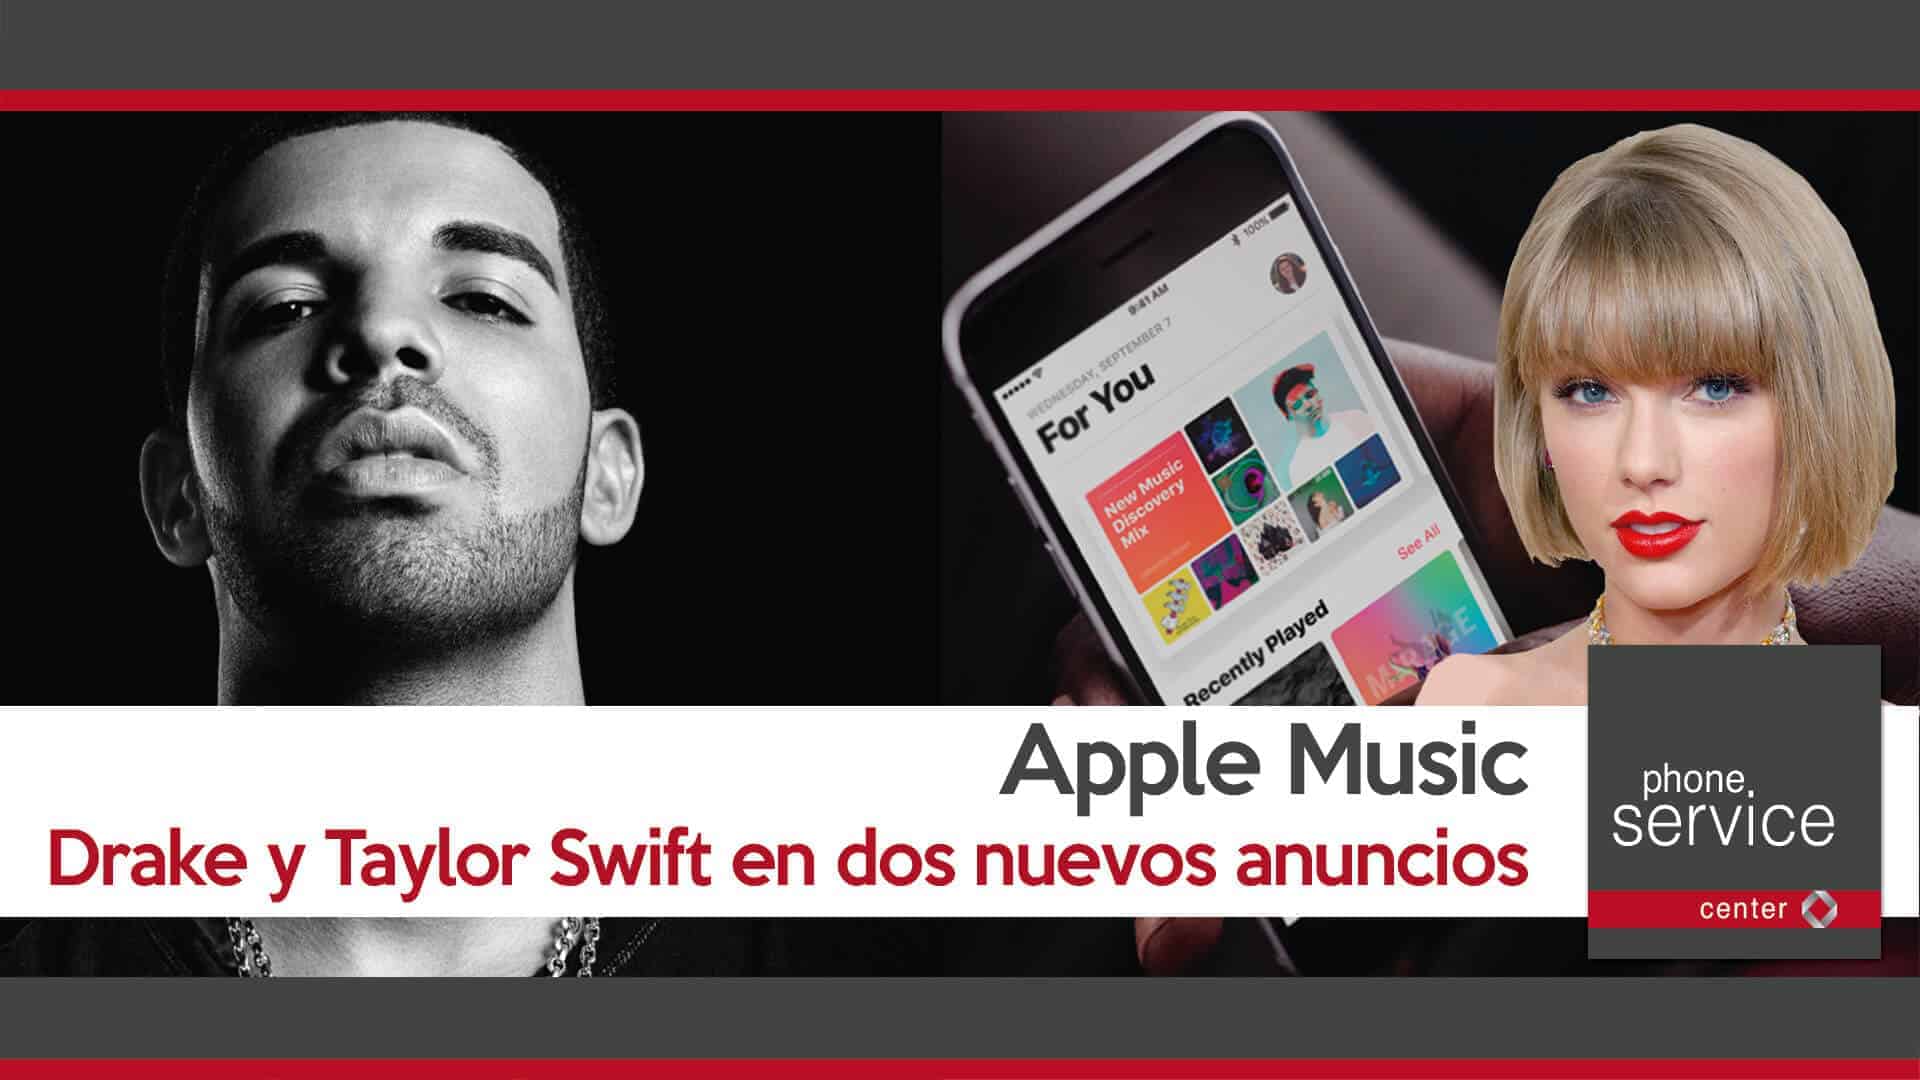 Apple Music dos nuevos anuncios